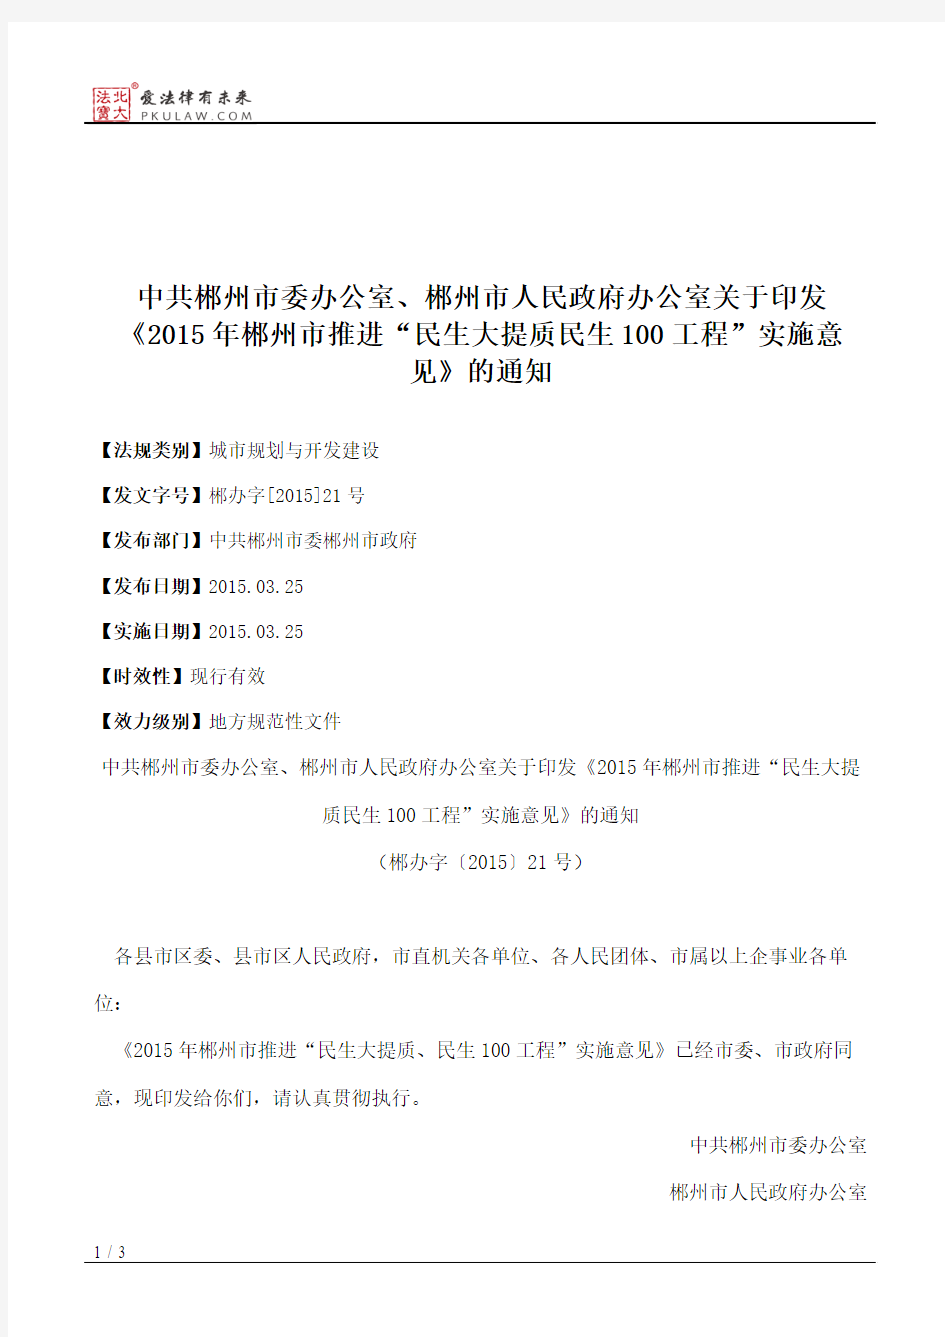 中共郴州市委办公室、郴州市人民政府办公室关于印发《2015年郴州